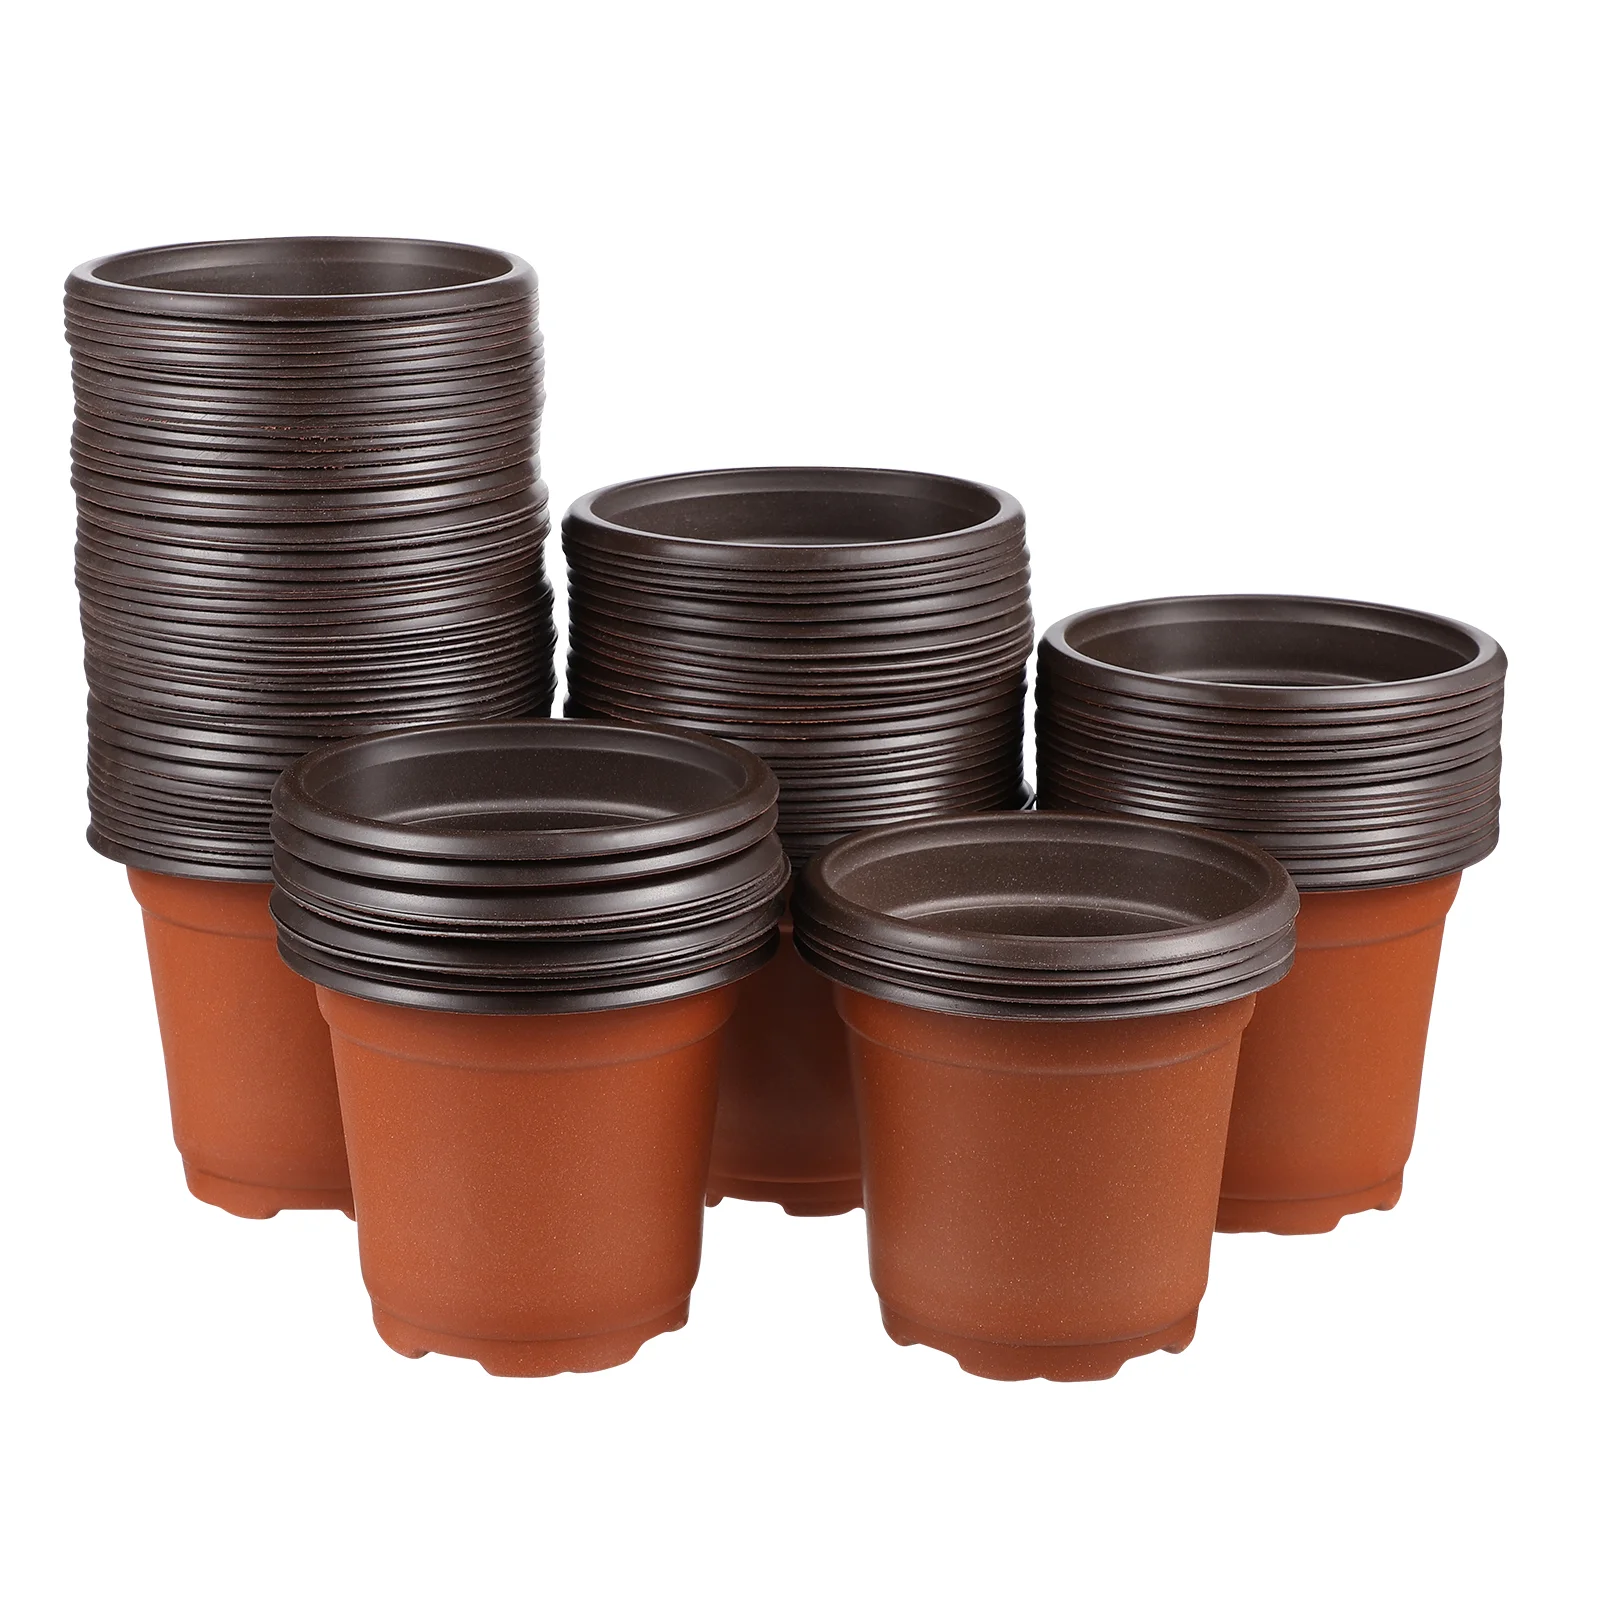 100 Pcs Plastic Go Containers Plants Flower Pot Pot Garden Flower Pots Plastic Nursery Starting Pots